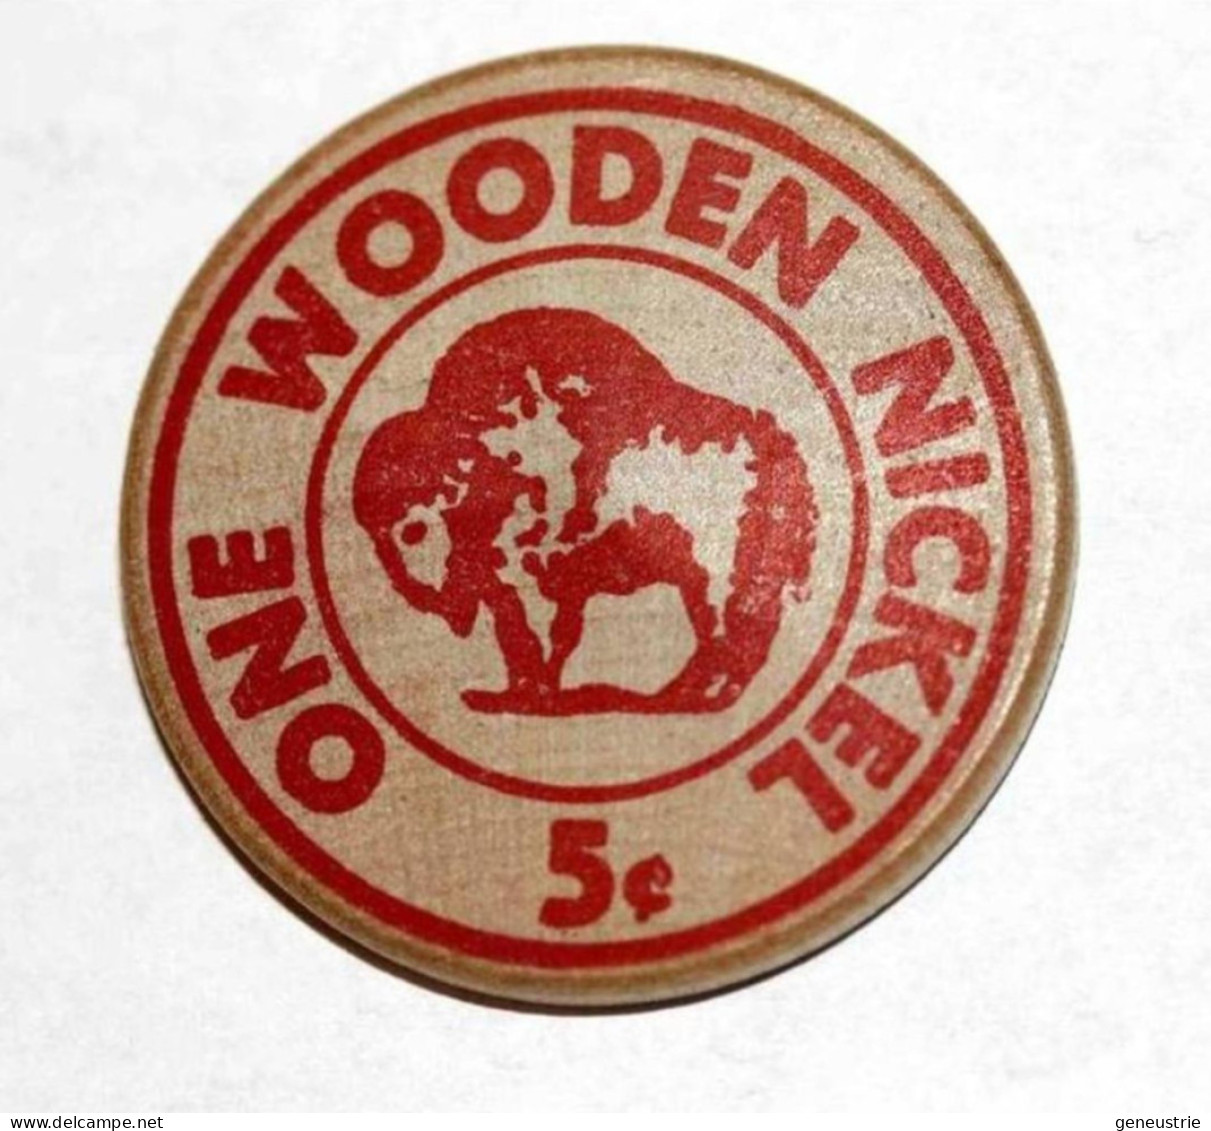 Rare Wooden Token 3c - Wooden Nickel - Jeton Bois Monnaie Nécessité 5 Cents - Bison - Coca-Cola - Etats-Unis - Monetary/Of Necessity